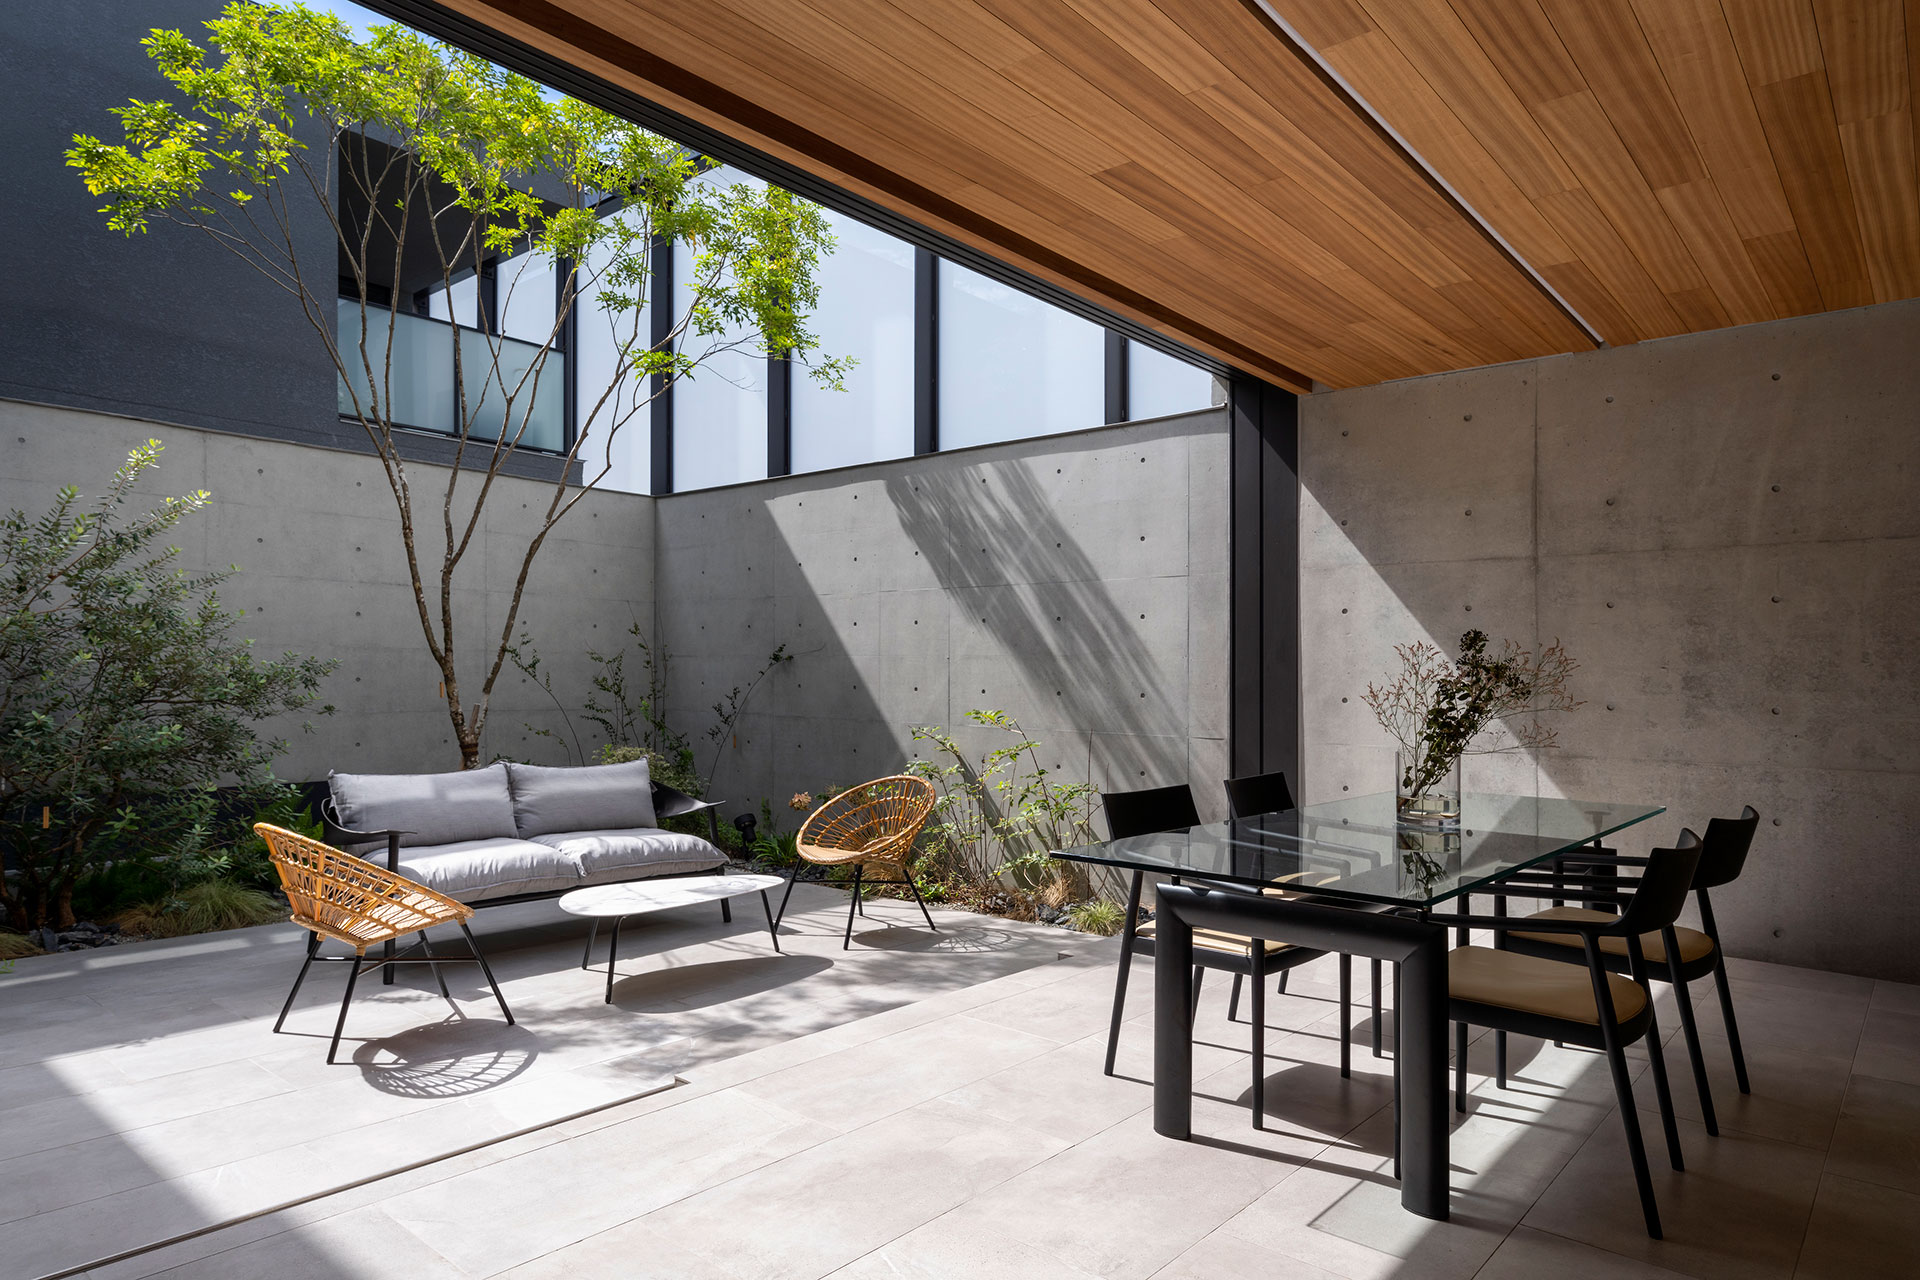 関西の建築家・真銅祥一朗設計の中庭のある家のアウターリビング コンクリート打ち放しとガラススクリーンの塀、タイル貼りの床、板貼りの天井で構成される。